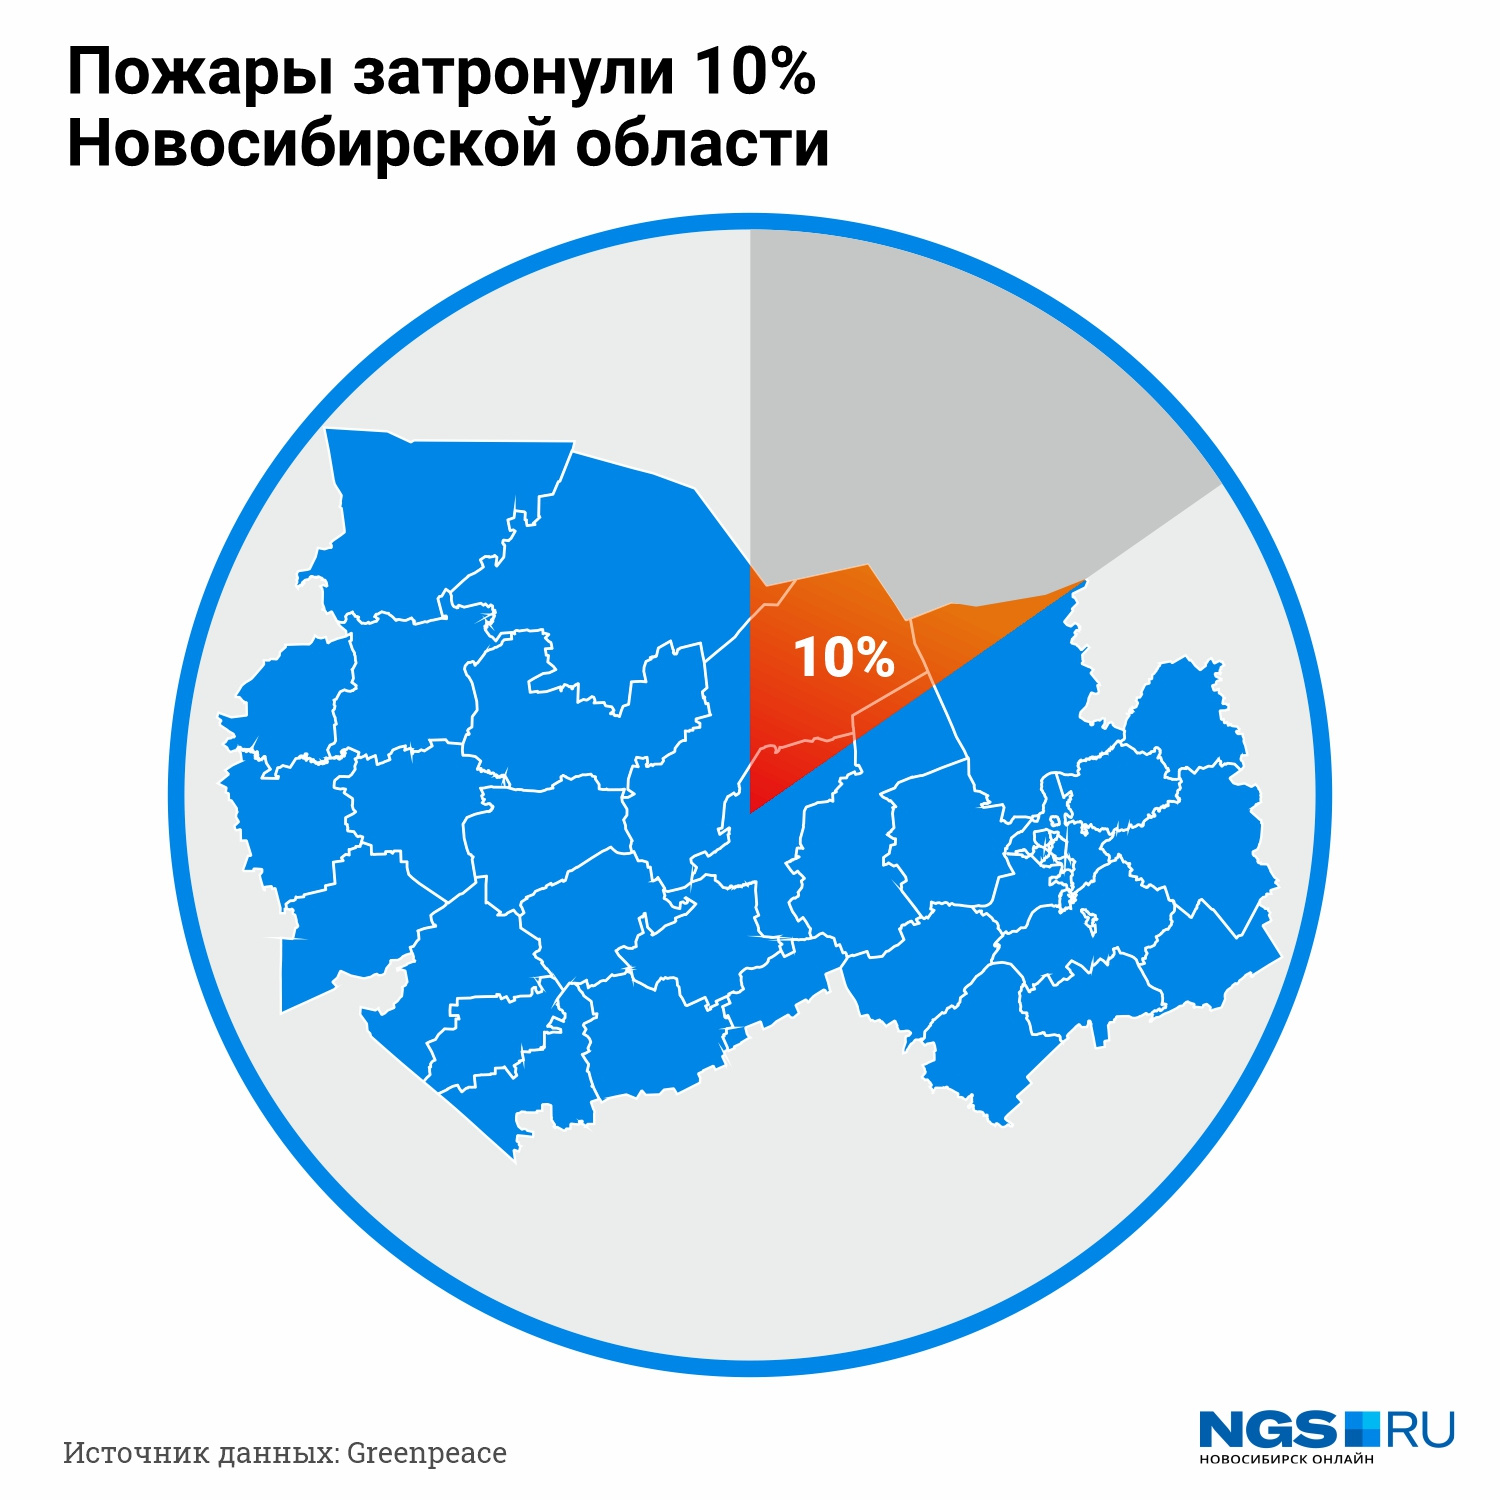 По данным сайта правительства Новосибирской области, площадь региона составляет 177 756 квадратных километров, таким образом, пожары, по данным «Гринпис», затронули чуть больше 10% региона